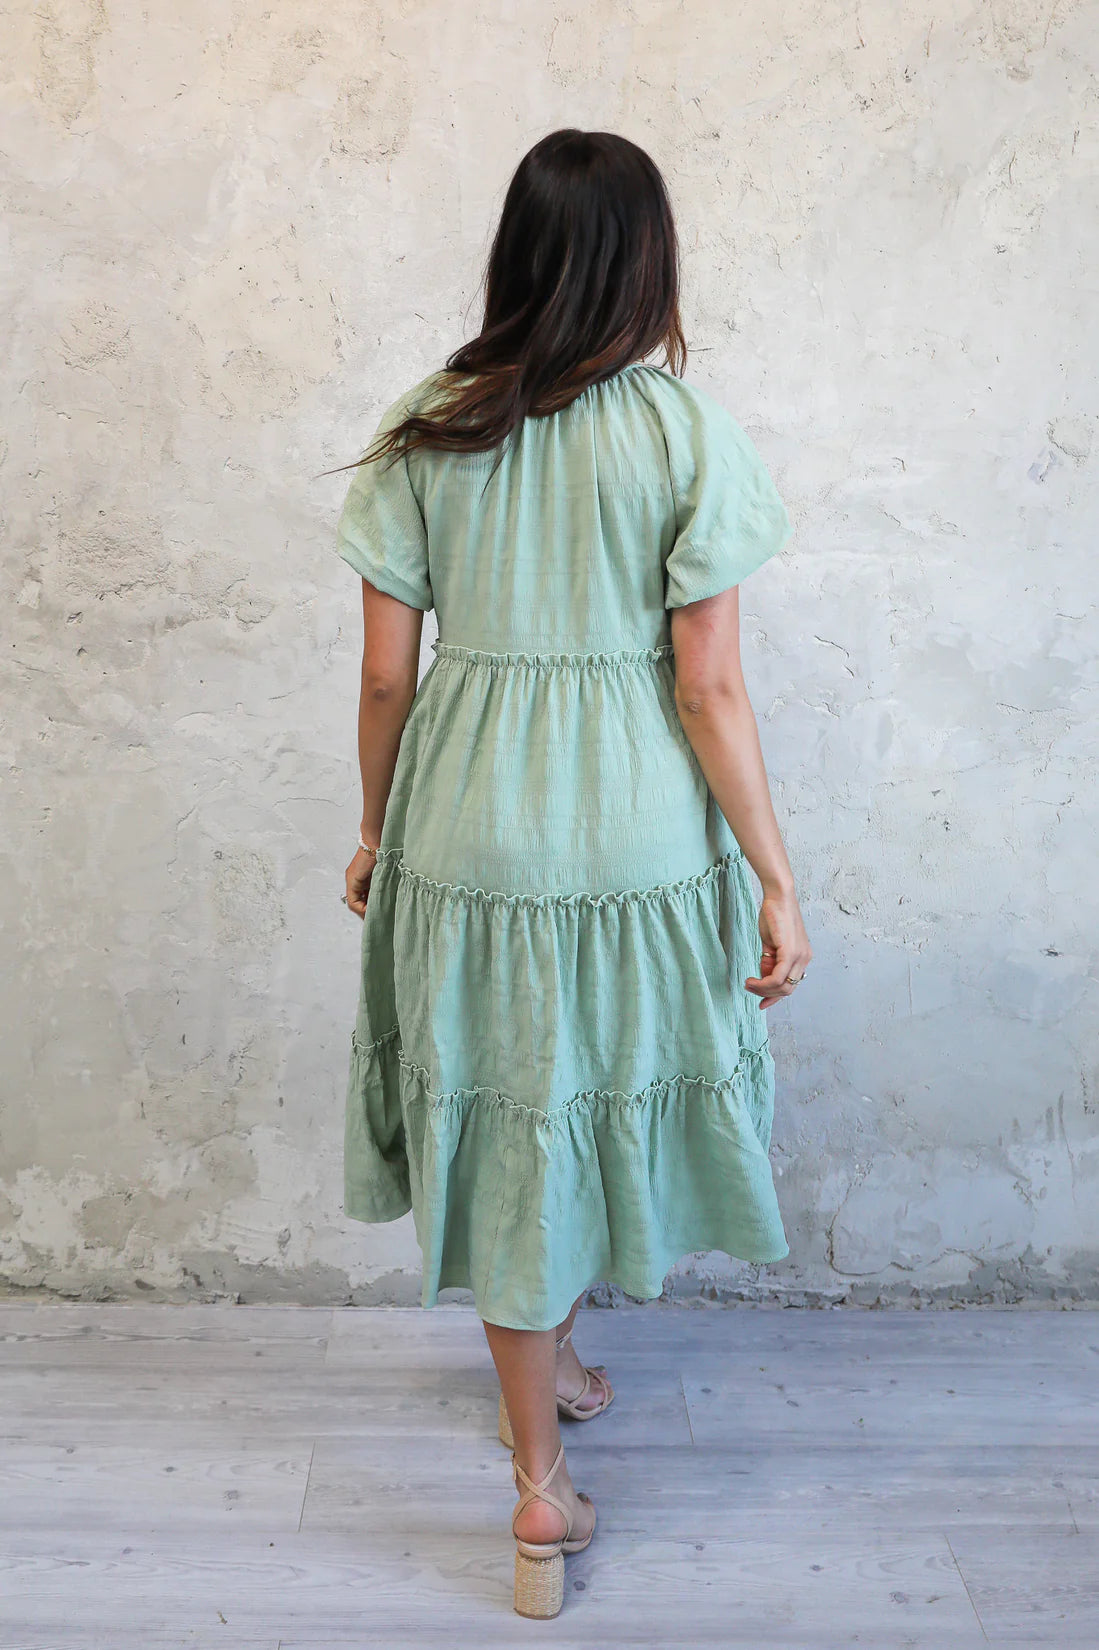 Plus Size Dresses | Variety of Modest Options | Tilden Co. – Tilden Co. LLC